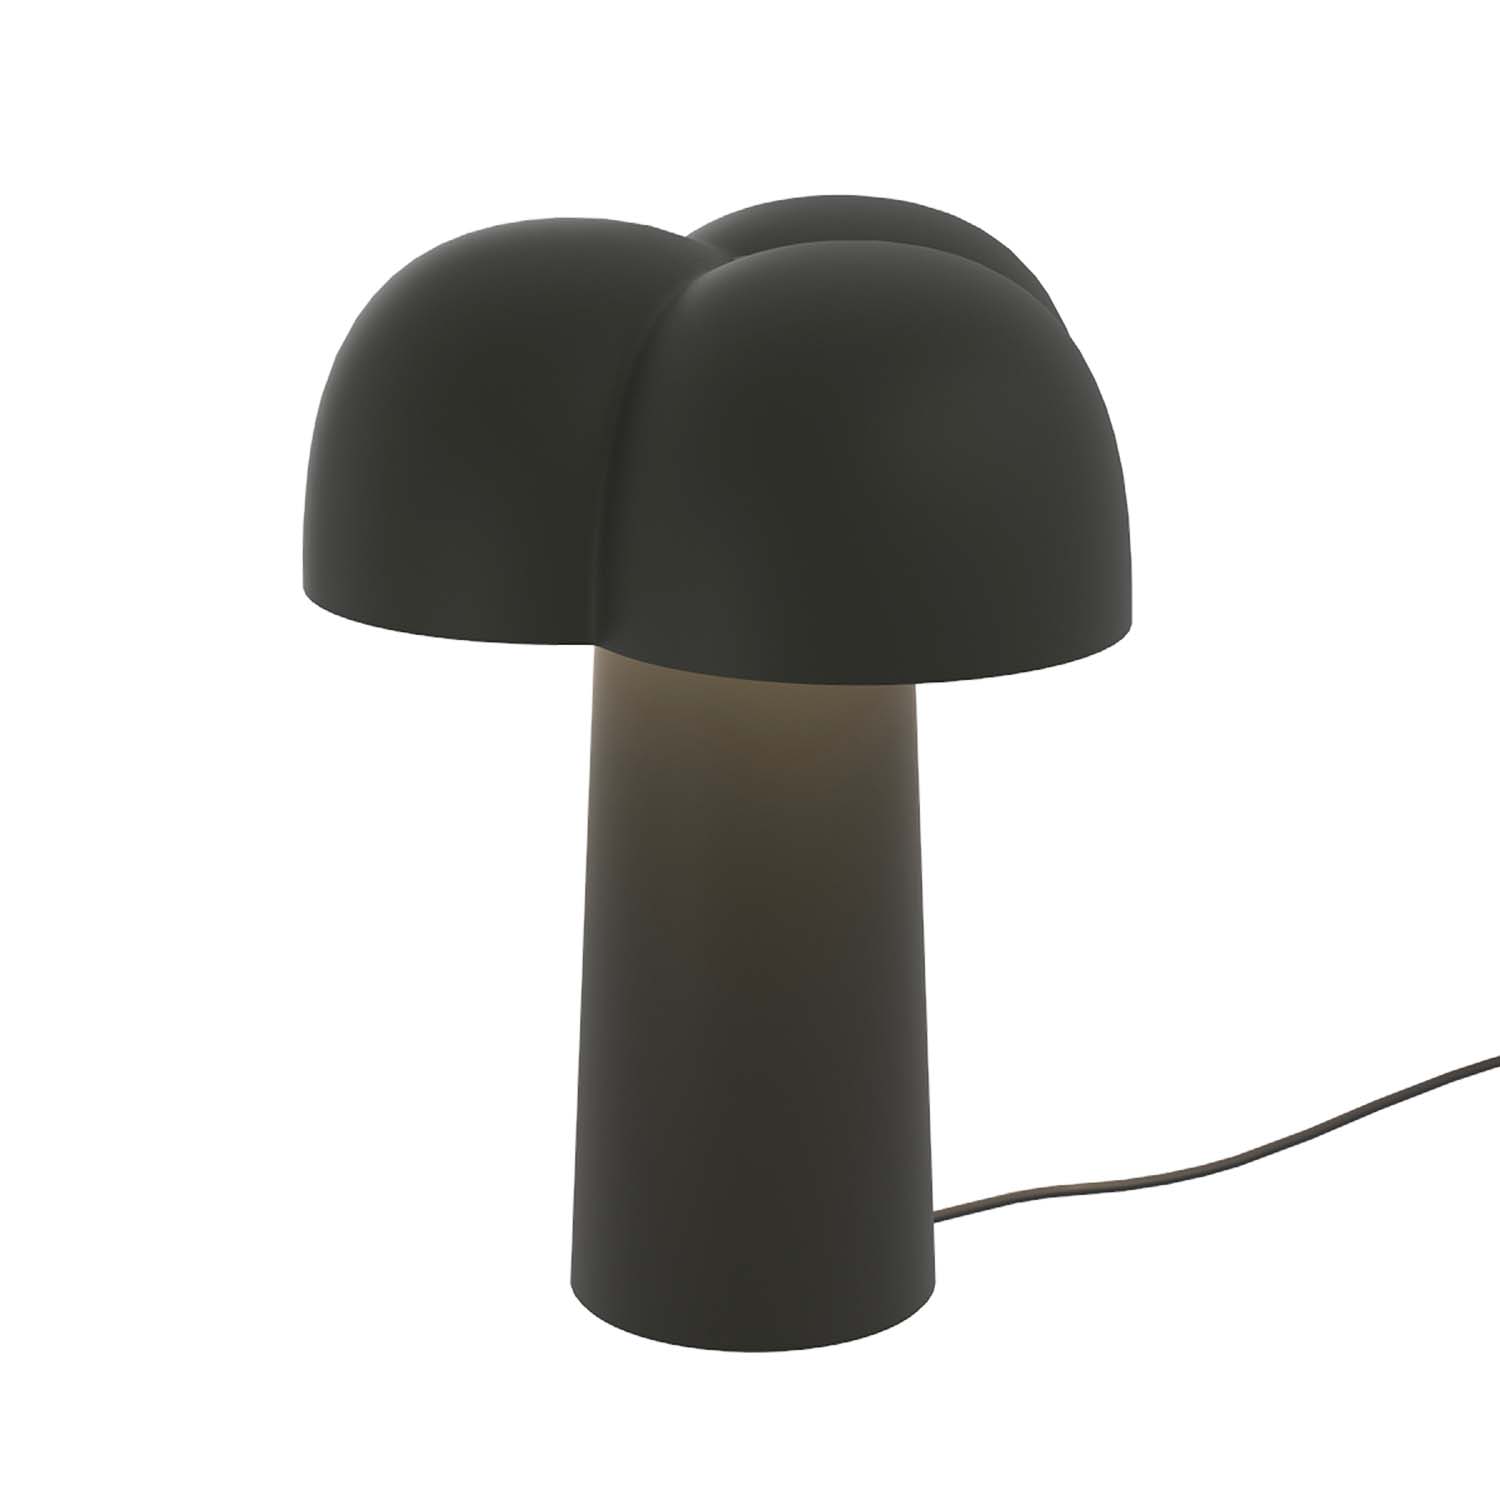 COTTON – Cocooning Cloud Tischlampe aus schwarzem Stahl